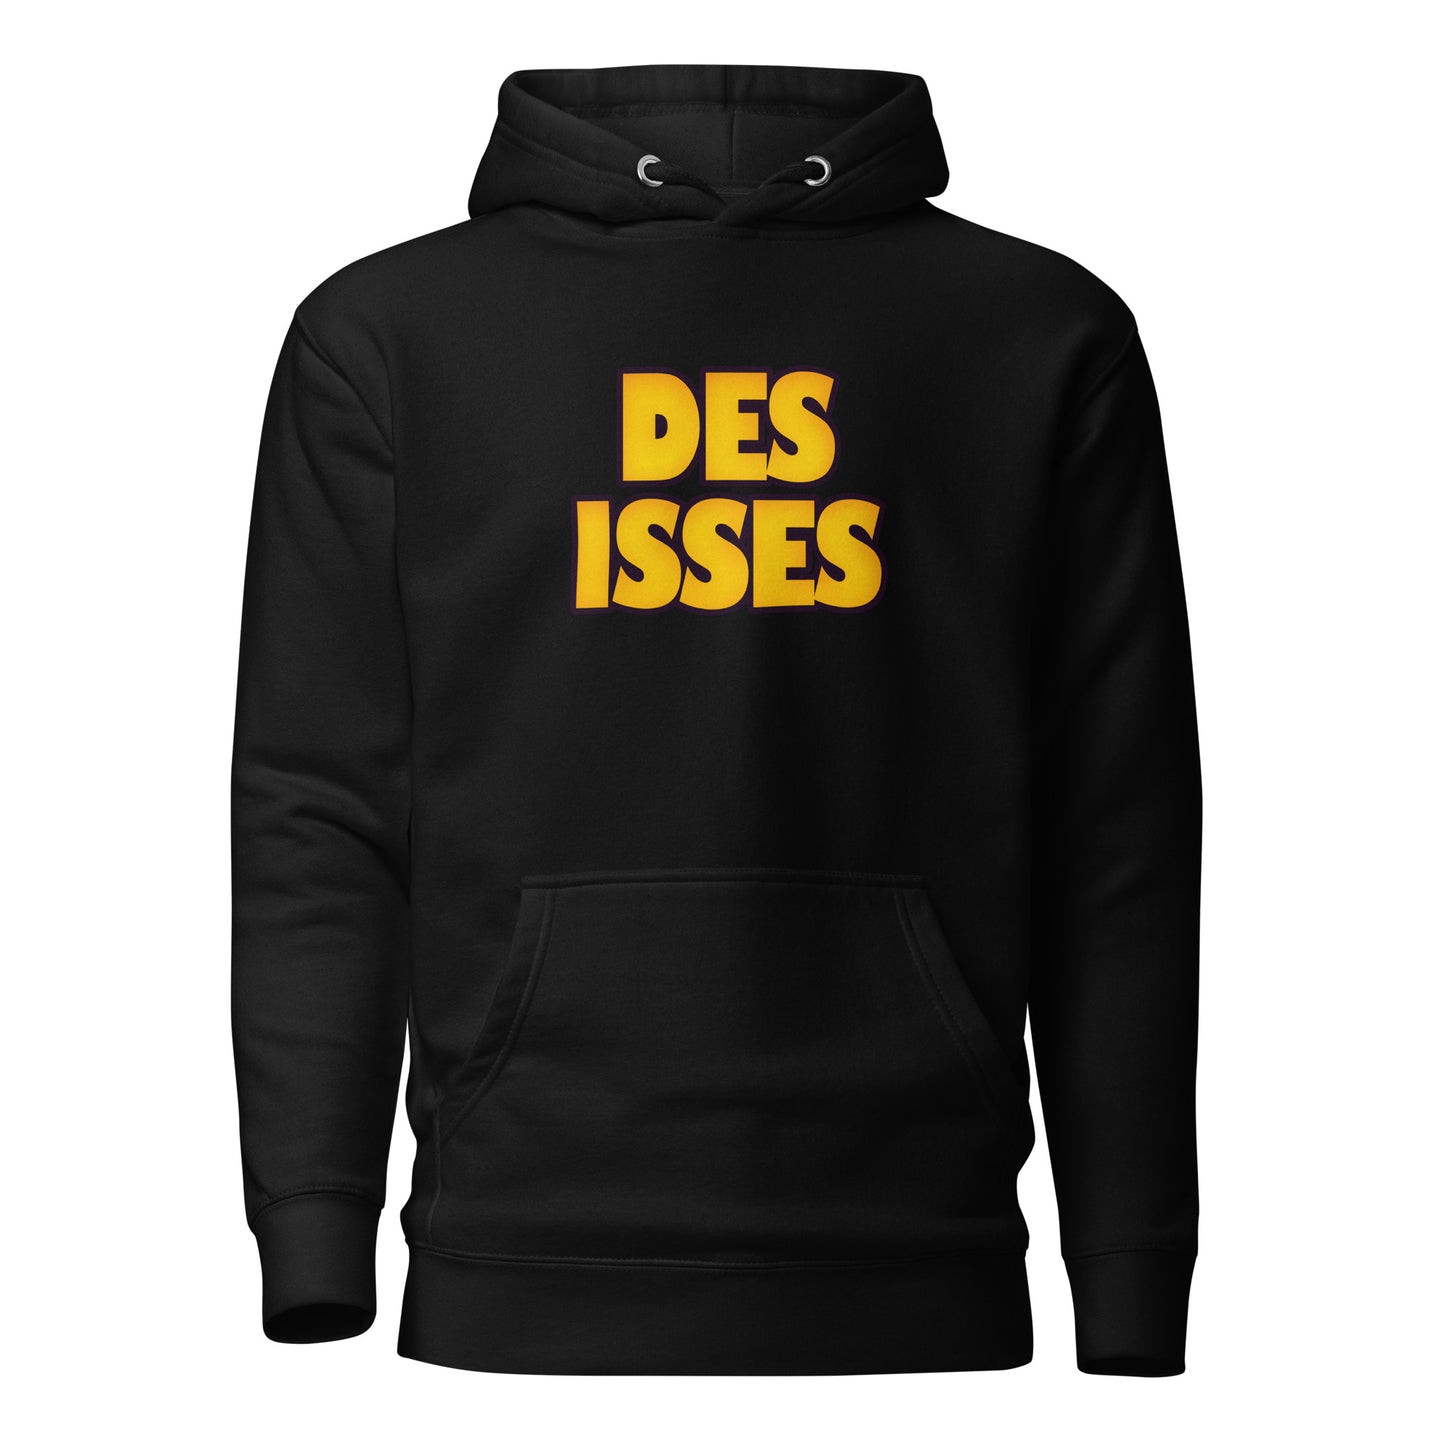 DES ISSES - Hoodie